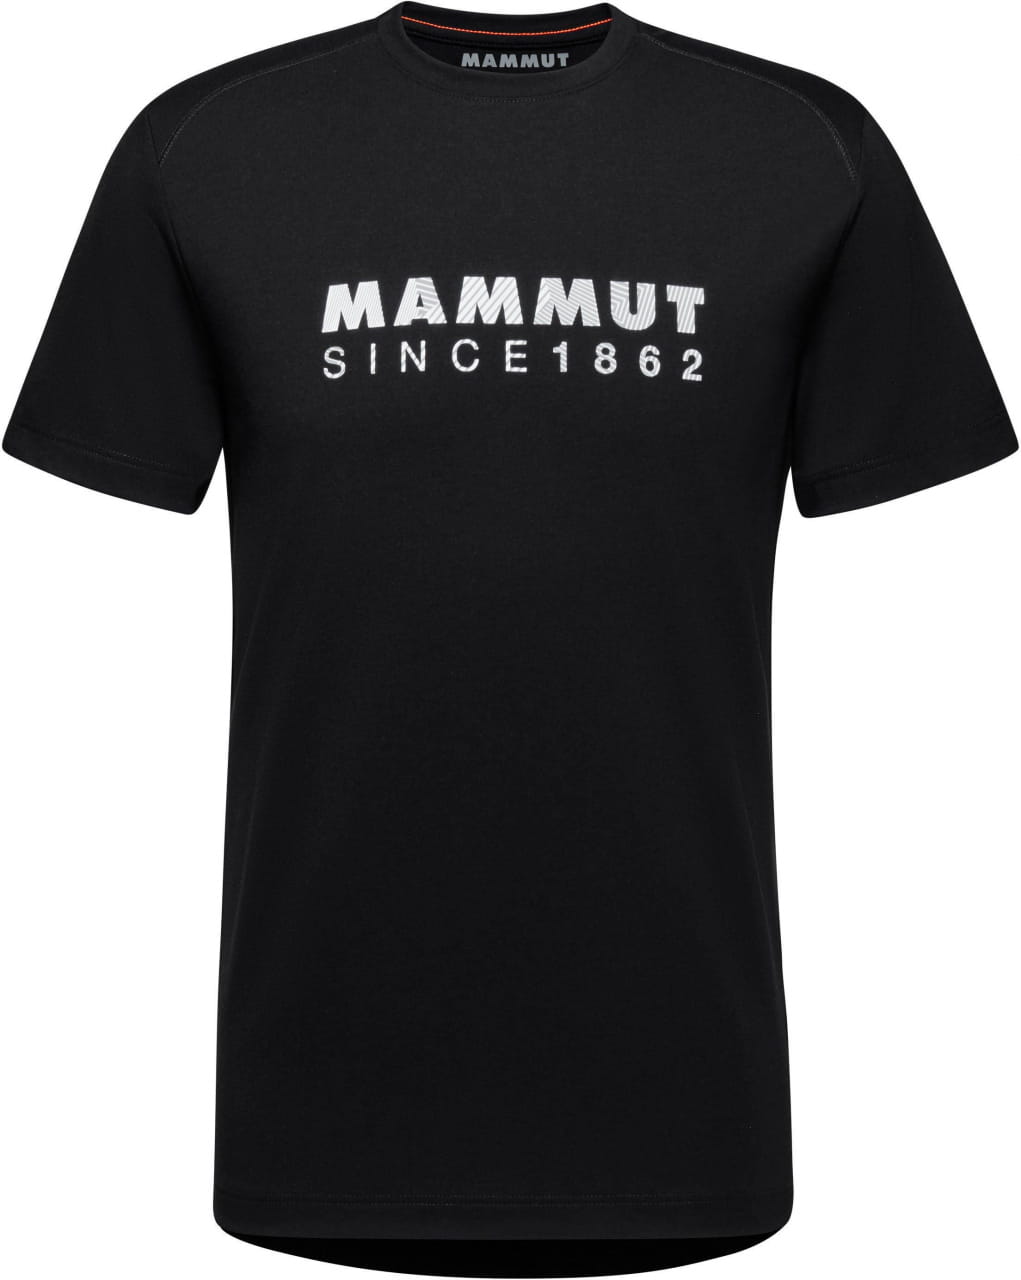 Sporthemd für Männer Mammut Trovat T-Shirt Men Logo